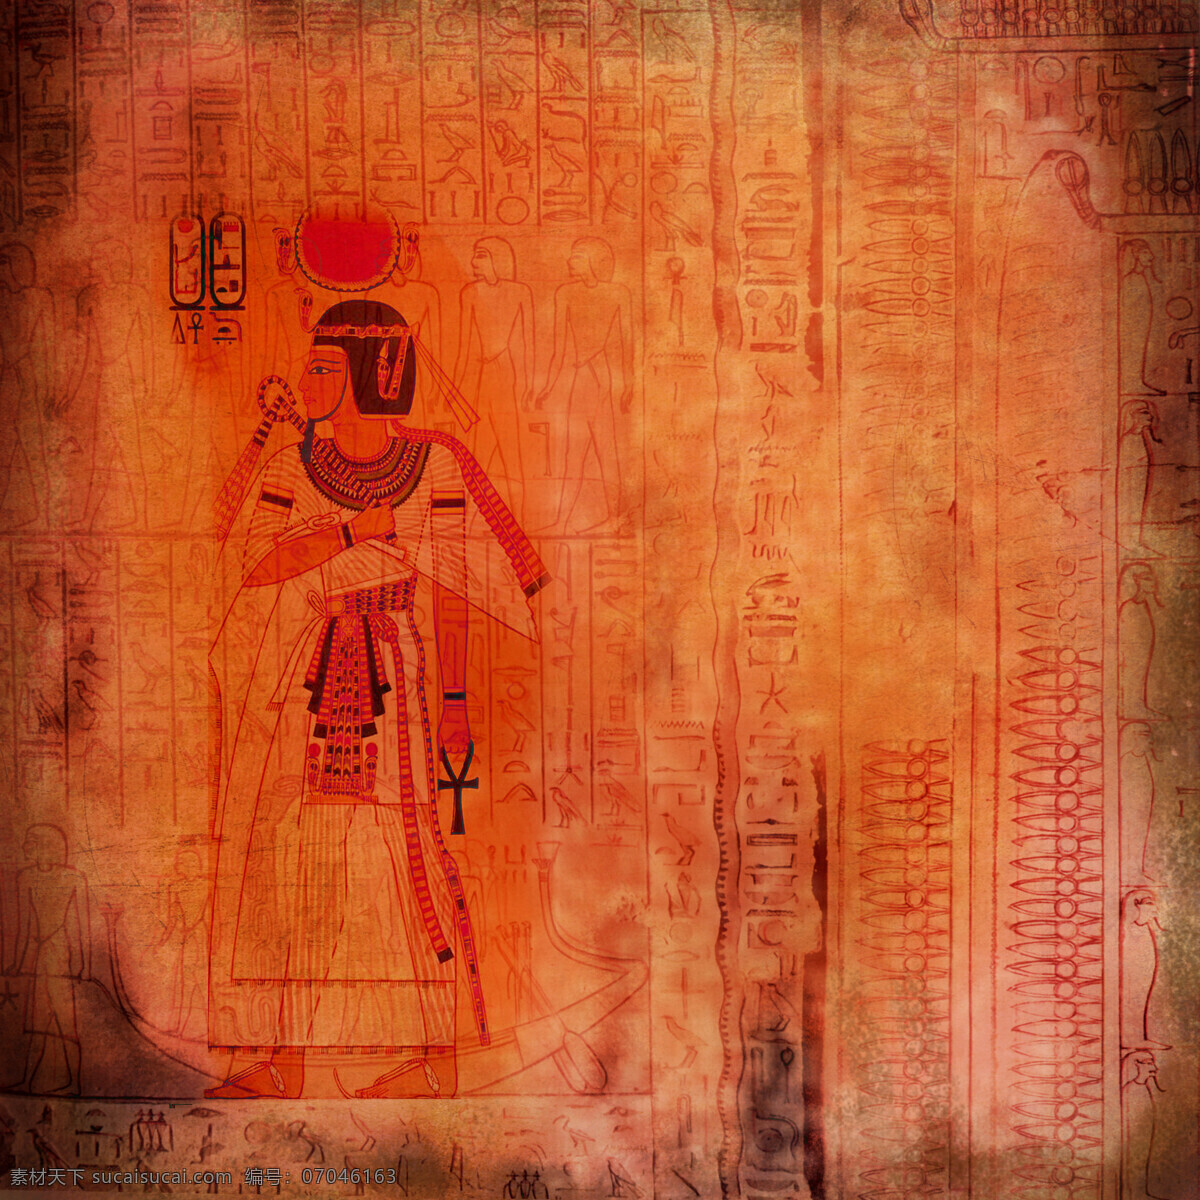 埃及女性壁画 埃及女性 埃及女人 埃及传统图案 埃及壁画 古埃及文化 传统图案 文化艺术 其他艺术 红色